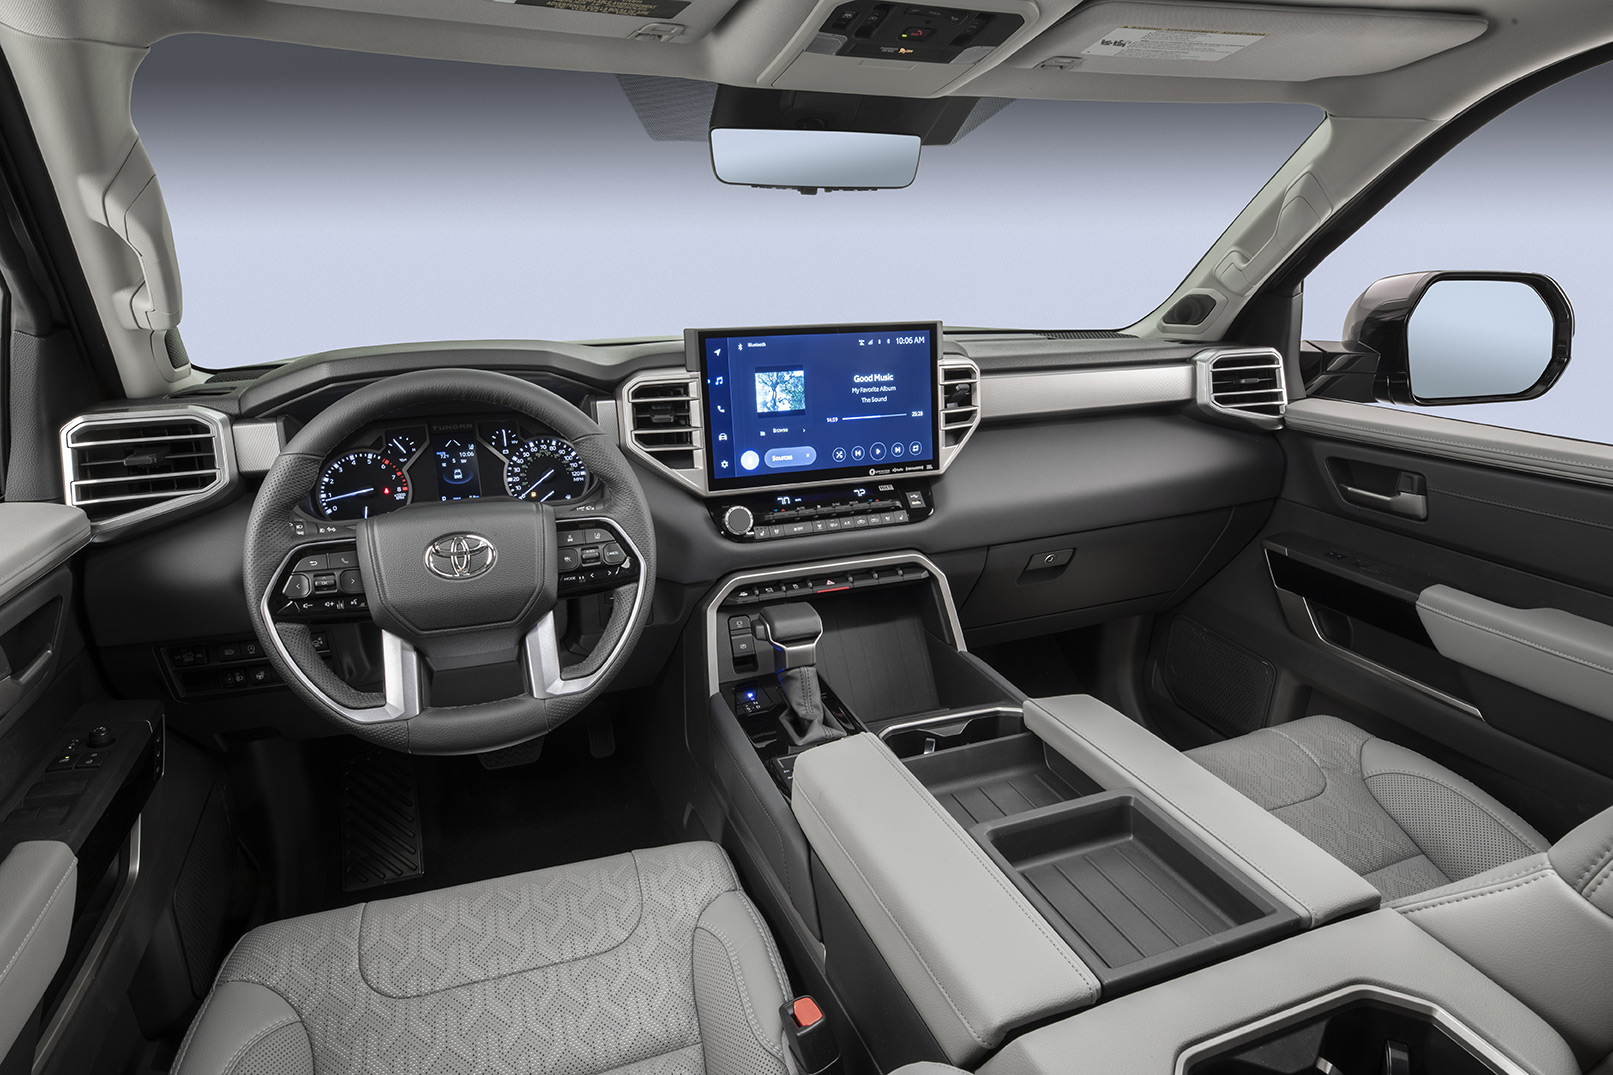 Toyota Tundra 2022 interior con pantalla amplia touch con Android Auto y Apple CarPlay